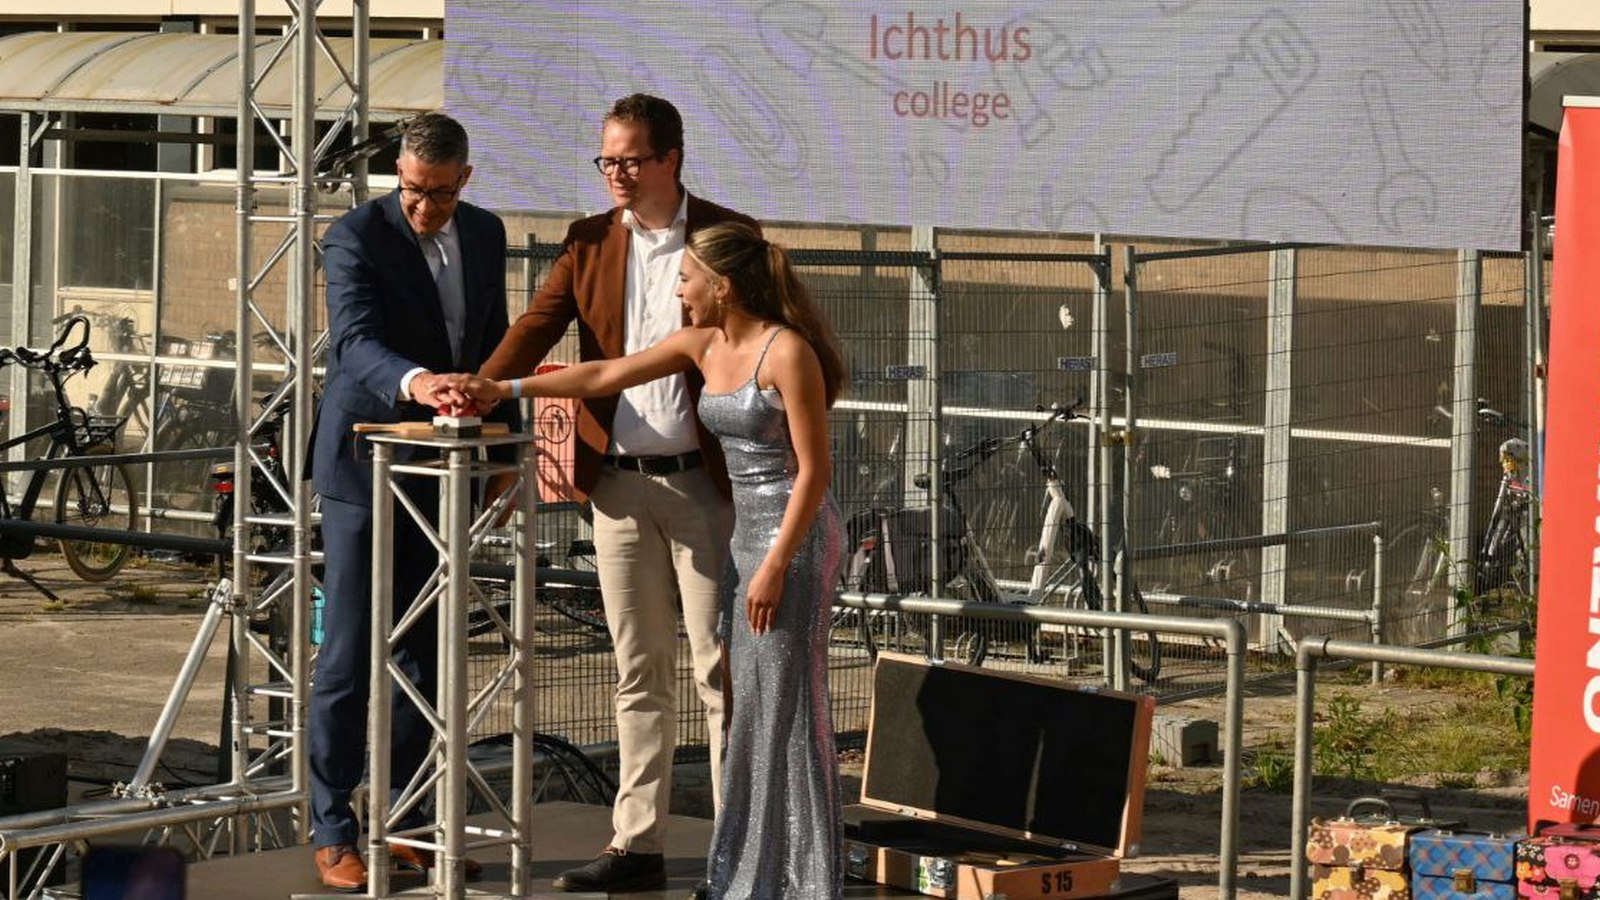 Opening van de nieuwe campus Ichthus College: Een samenwerking voor de toekomst